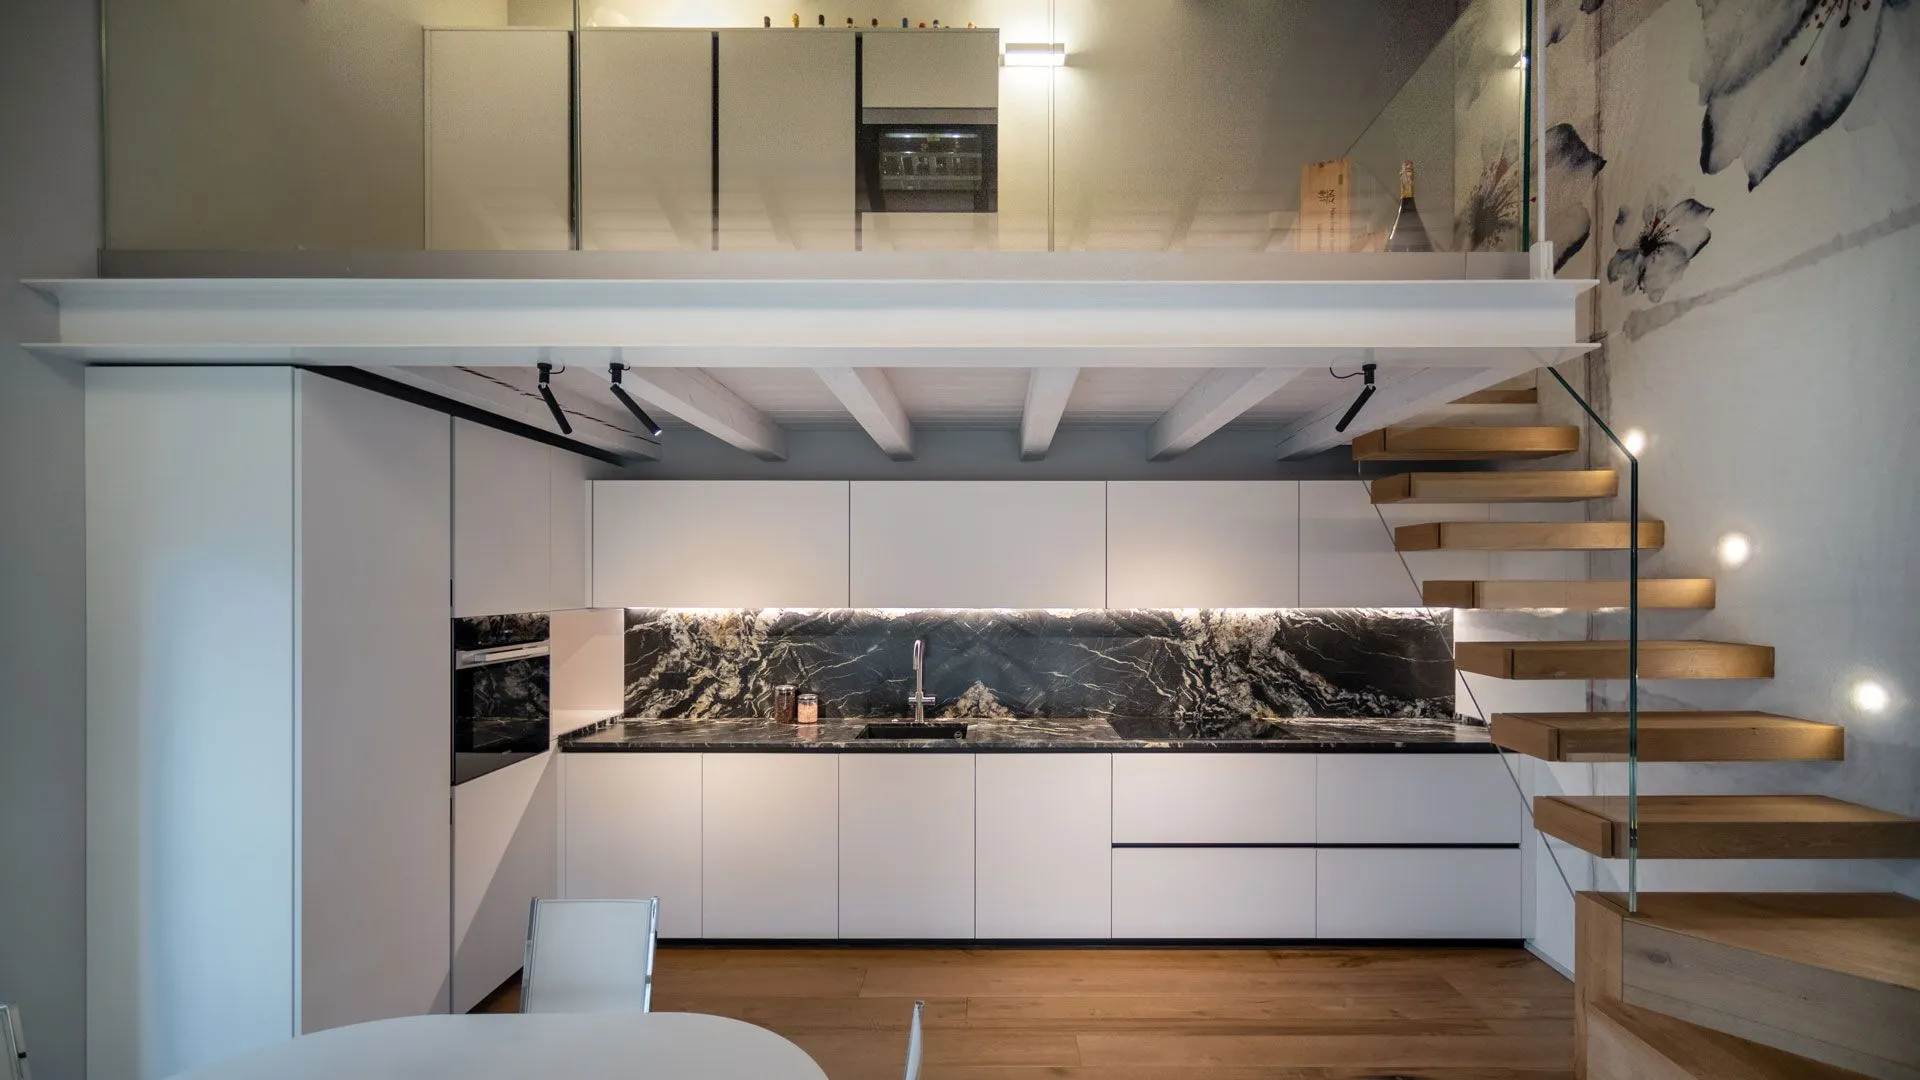 Design kitchen in Verona.